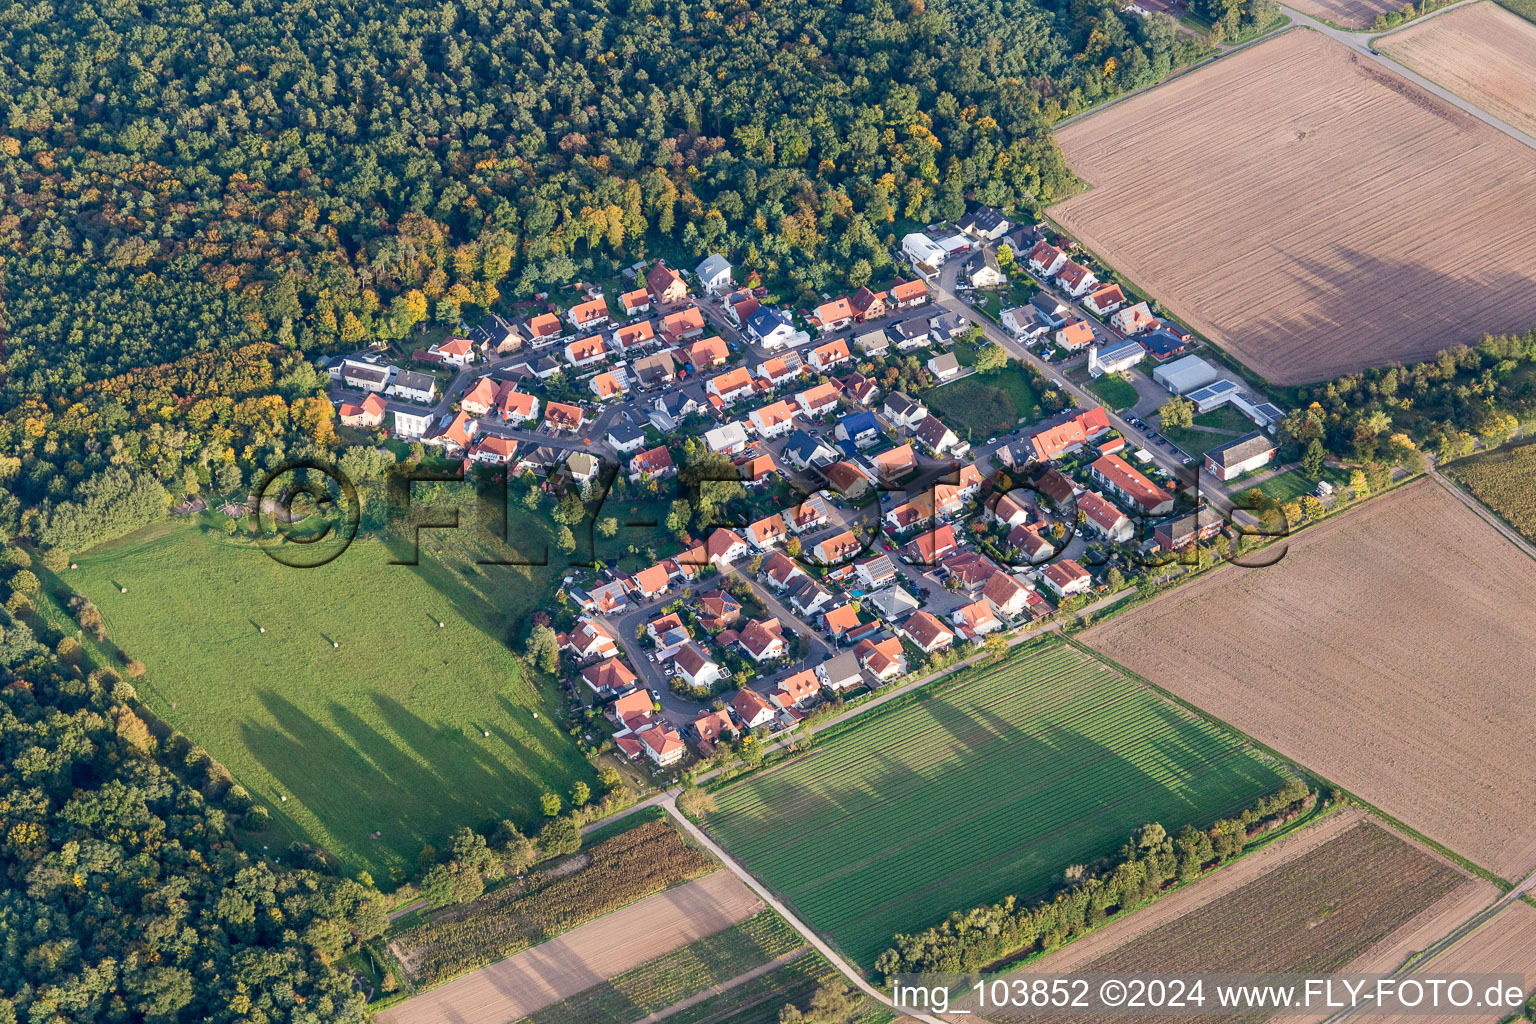 Vue aérienne de Zone d'habitation dans le district de Vorderlohe à Schwegenheim dans le département Rhénanie-Palatinat, Allemagne